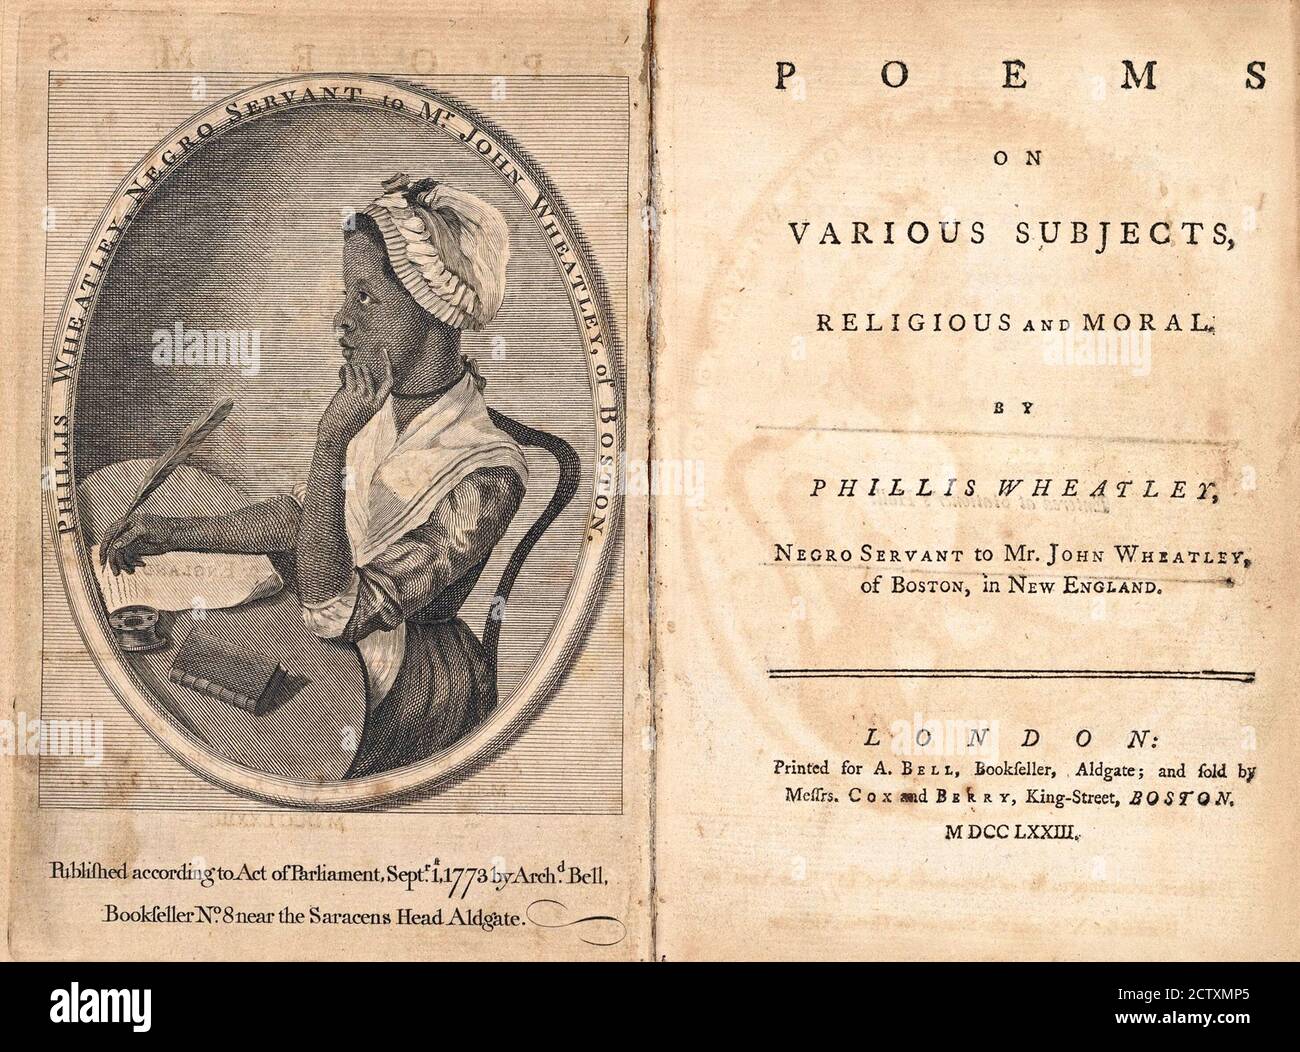 Phillis Wheatley (v.1753-1784), le premier auteur afro-américain d'un livre de poésie publié. Frontispice et page de titre d'une première édition de son livre "Poèmes sur divers sujets religieux et moraux", 1773 Banque D'Images